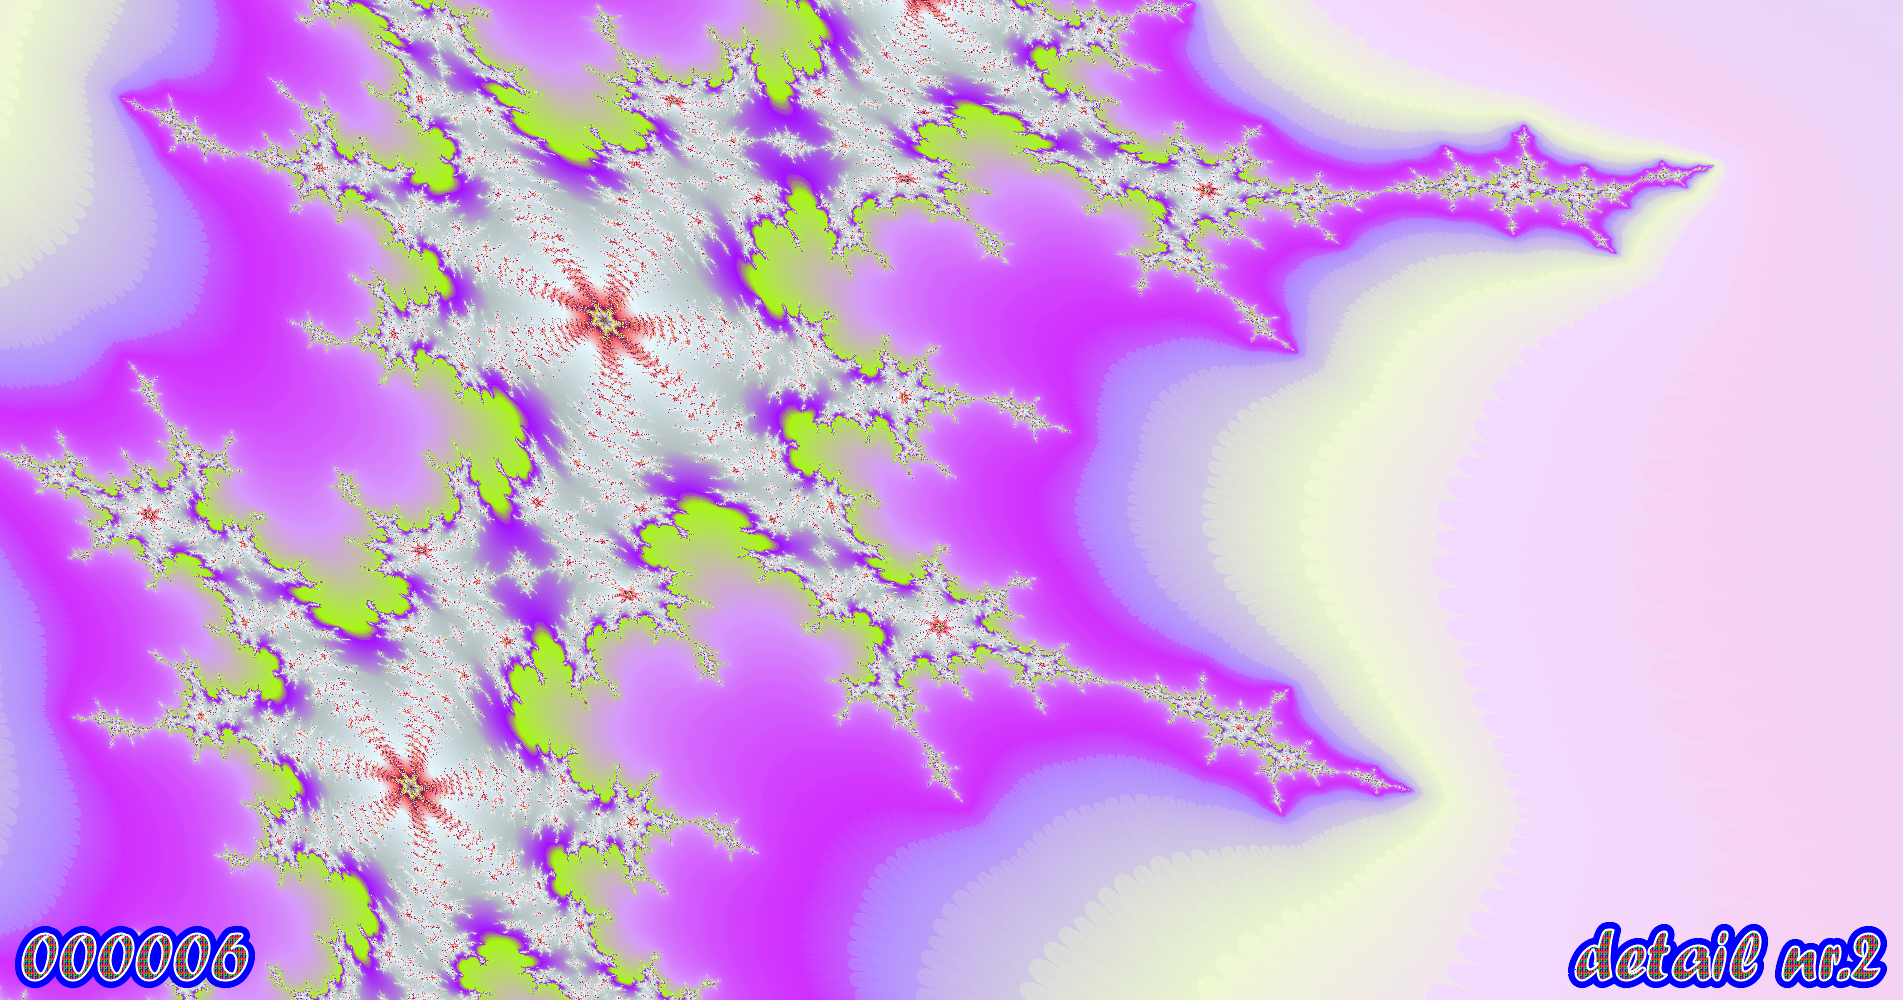 fractal kunst nr. 000006 ,detail nr. 2